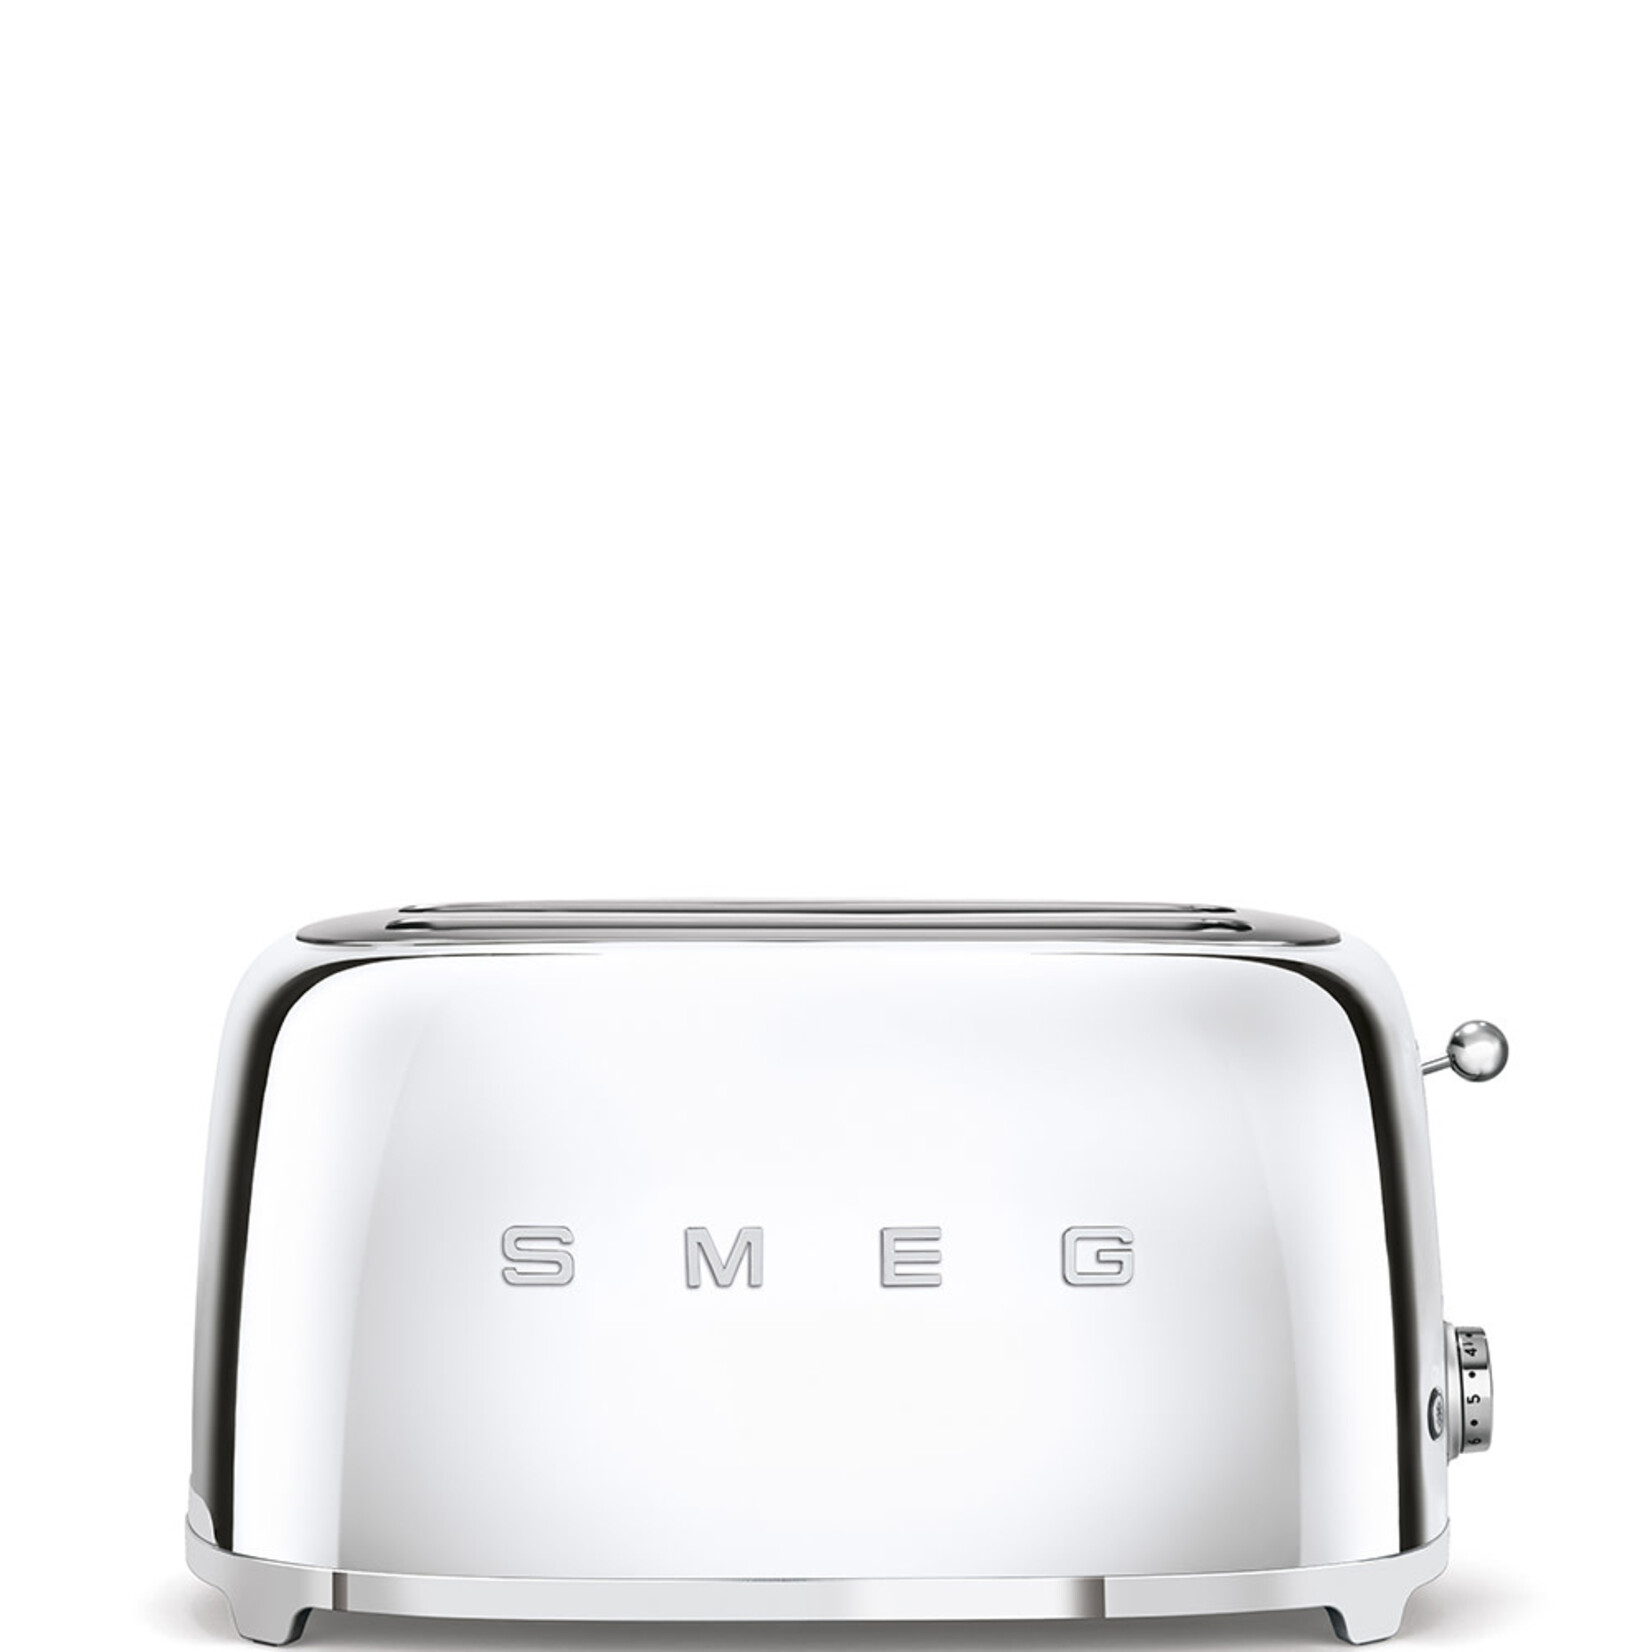 SMEG SMEG 50's Retro Style Aesthetic 4 Slice Toaster